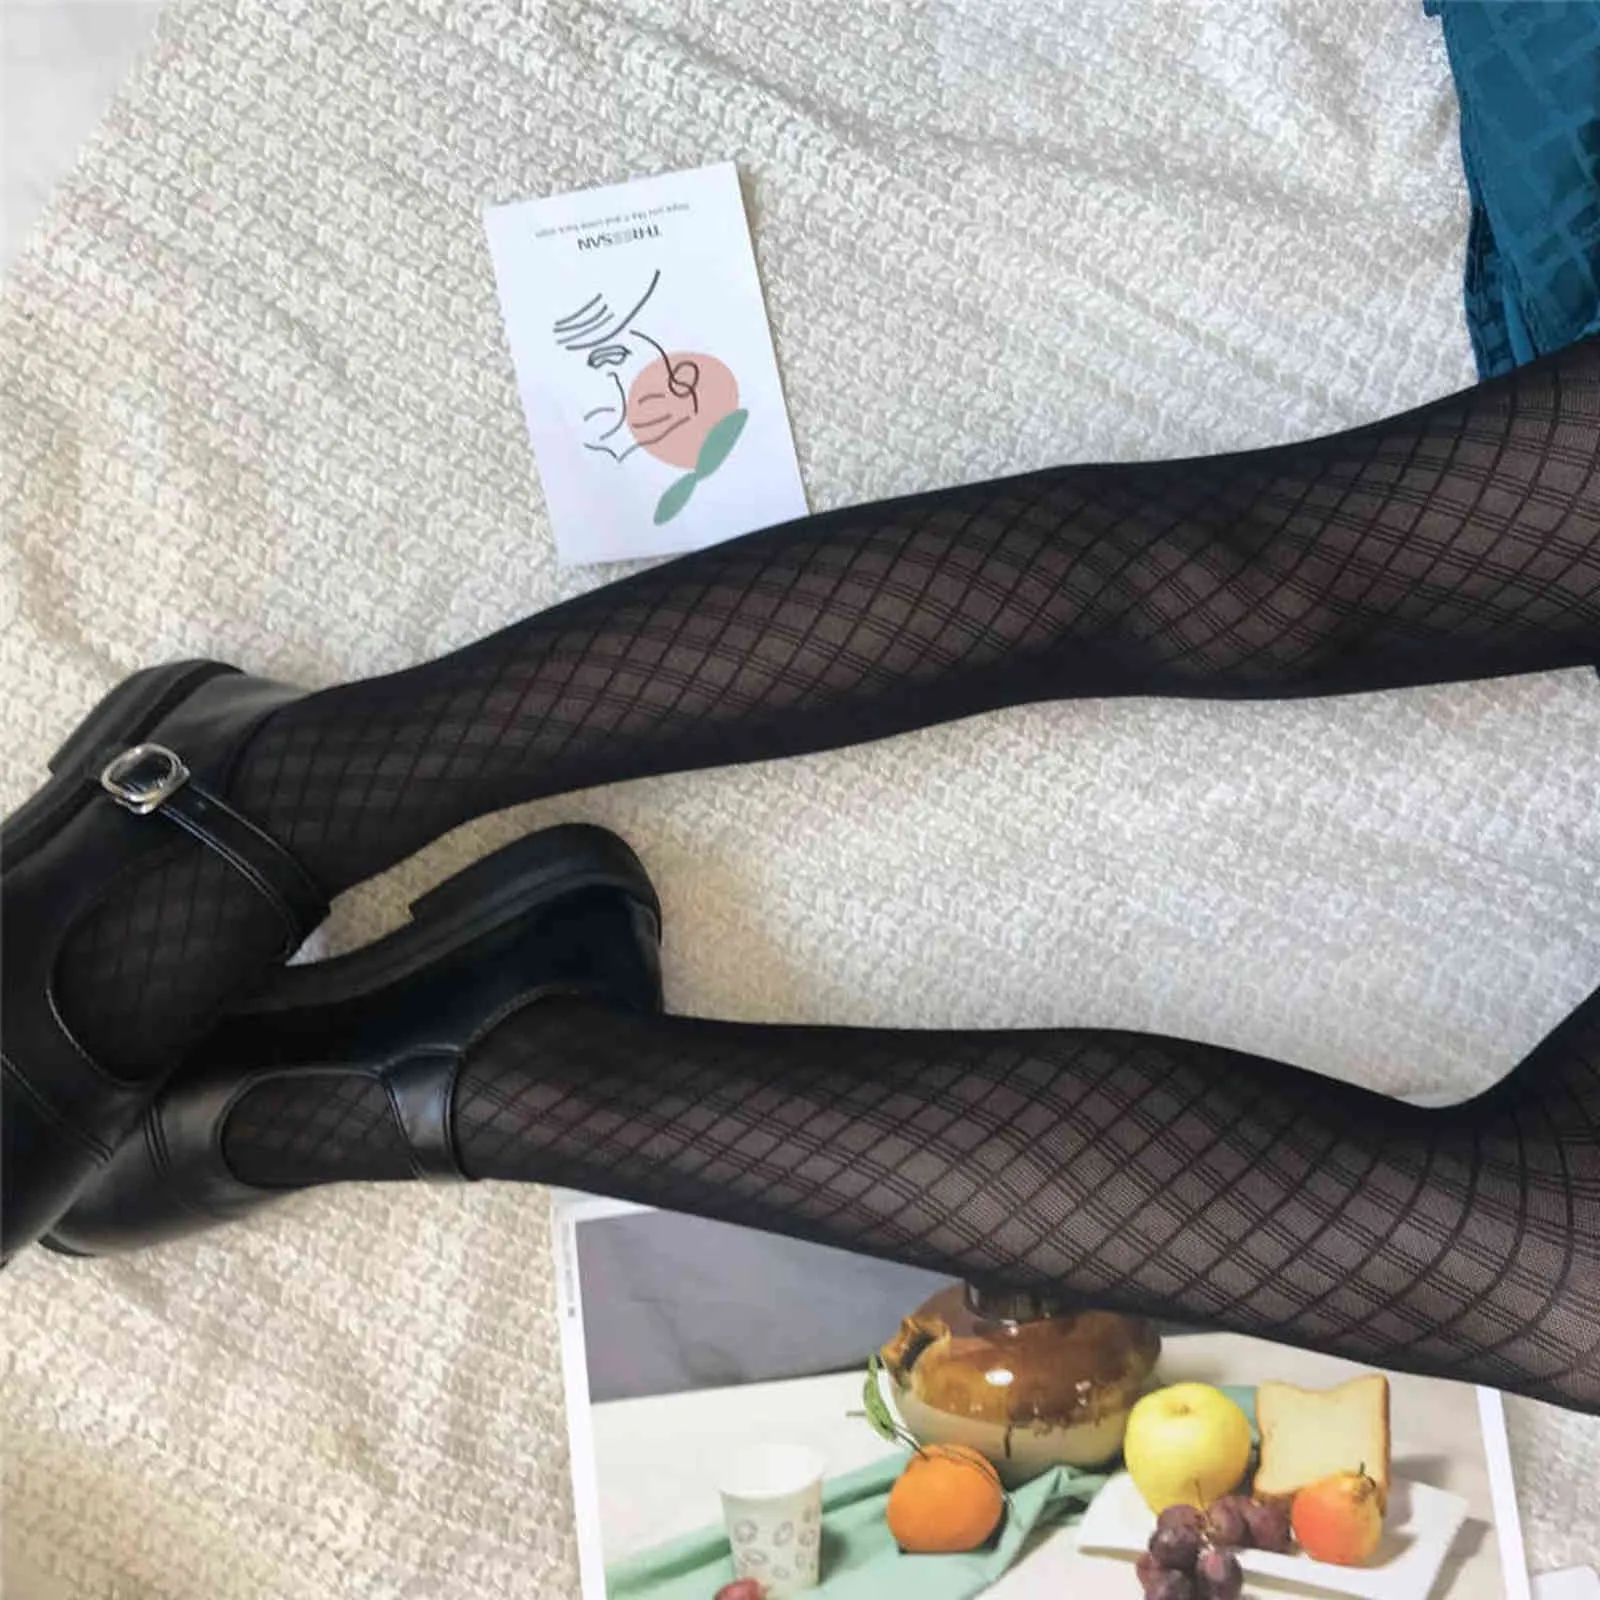 Sexy donne collant plaid calze nere moda sottile pantyhose femminile elastico collant in nylon calza di seta vestito Y1130